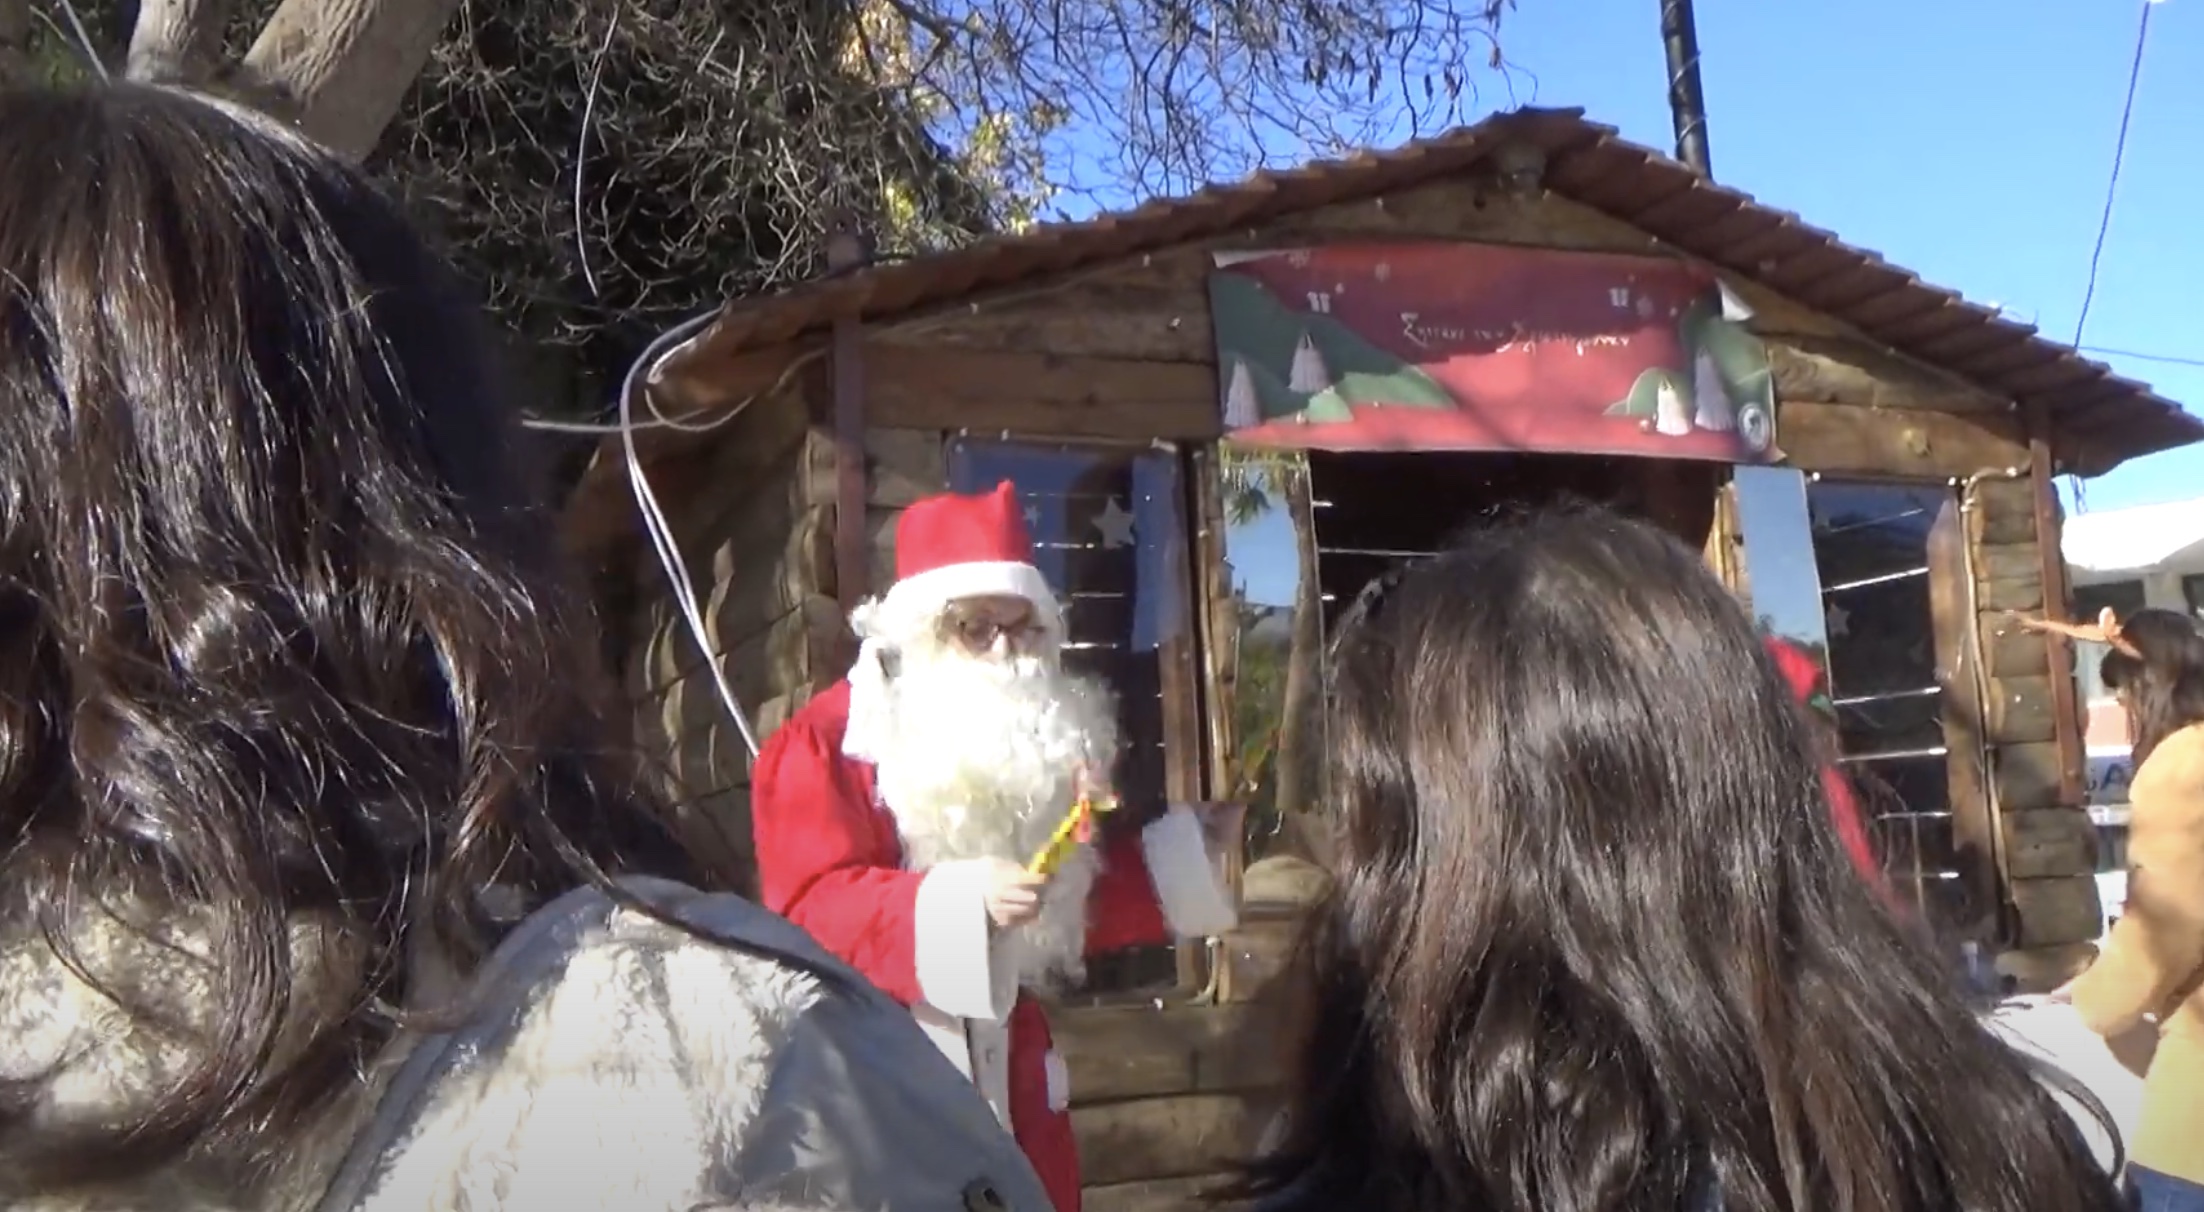 Χριστουγεννιάτικο κλίμα στην πόλη των Φαρσάλων με σαξόφωνο και Άγιο Βασίλη